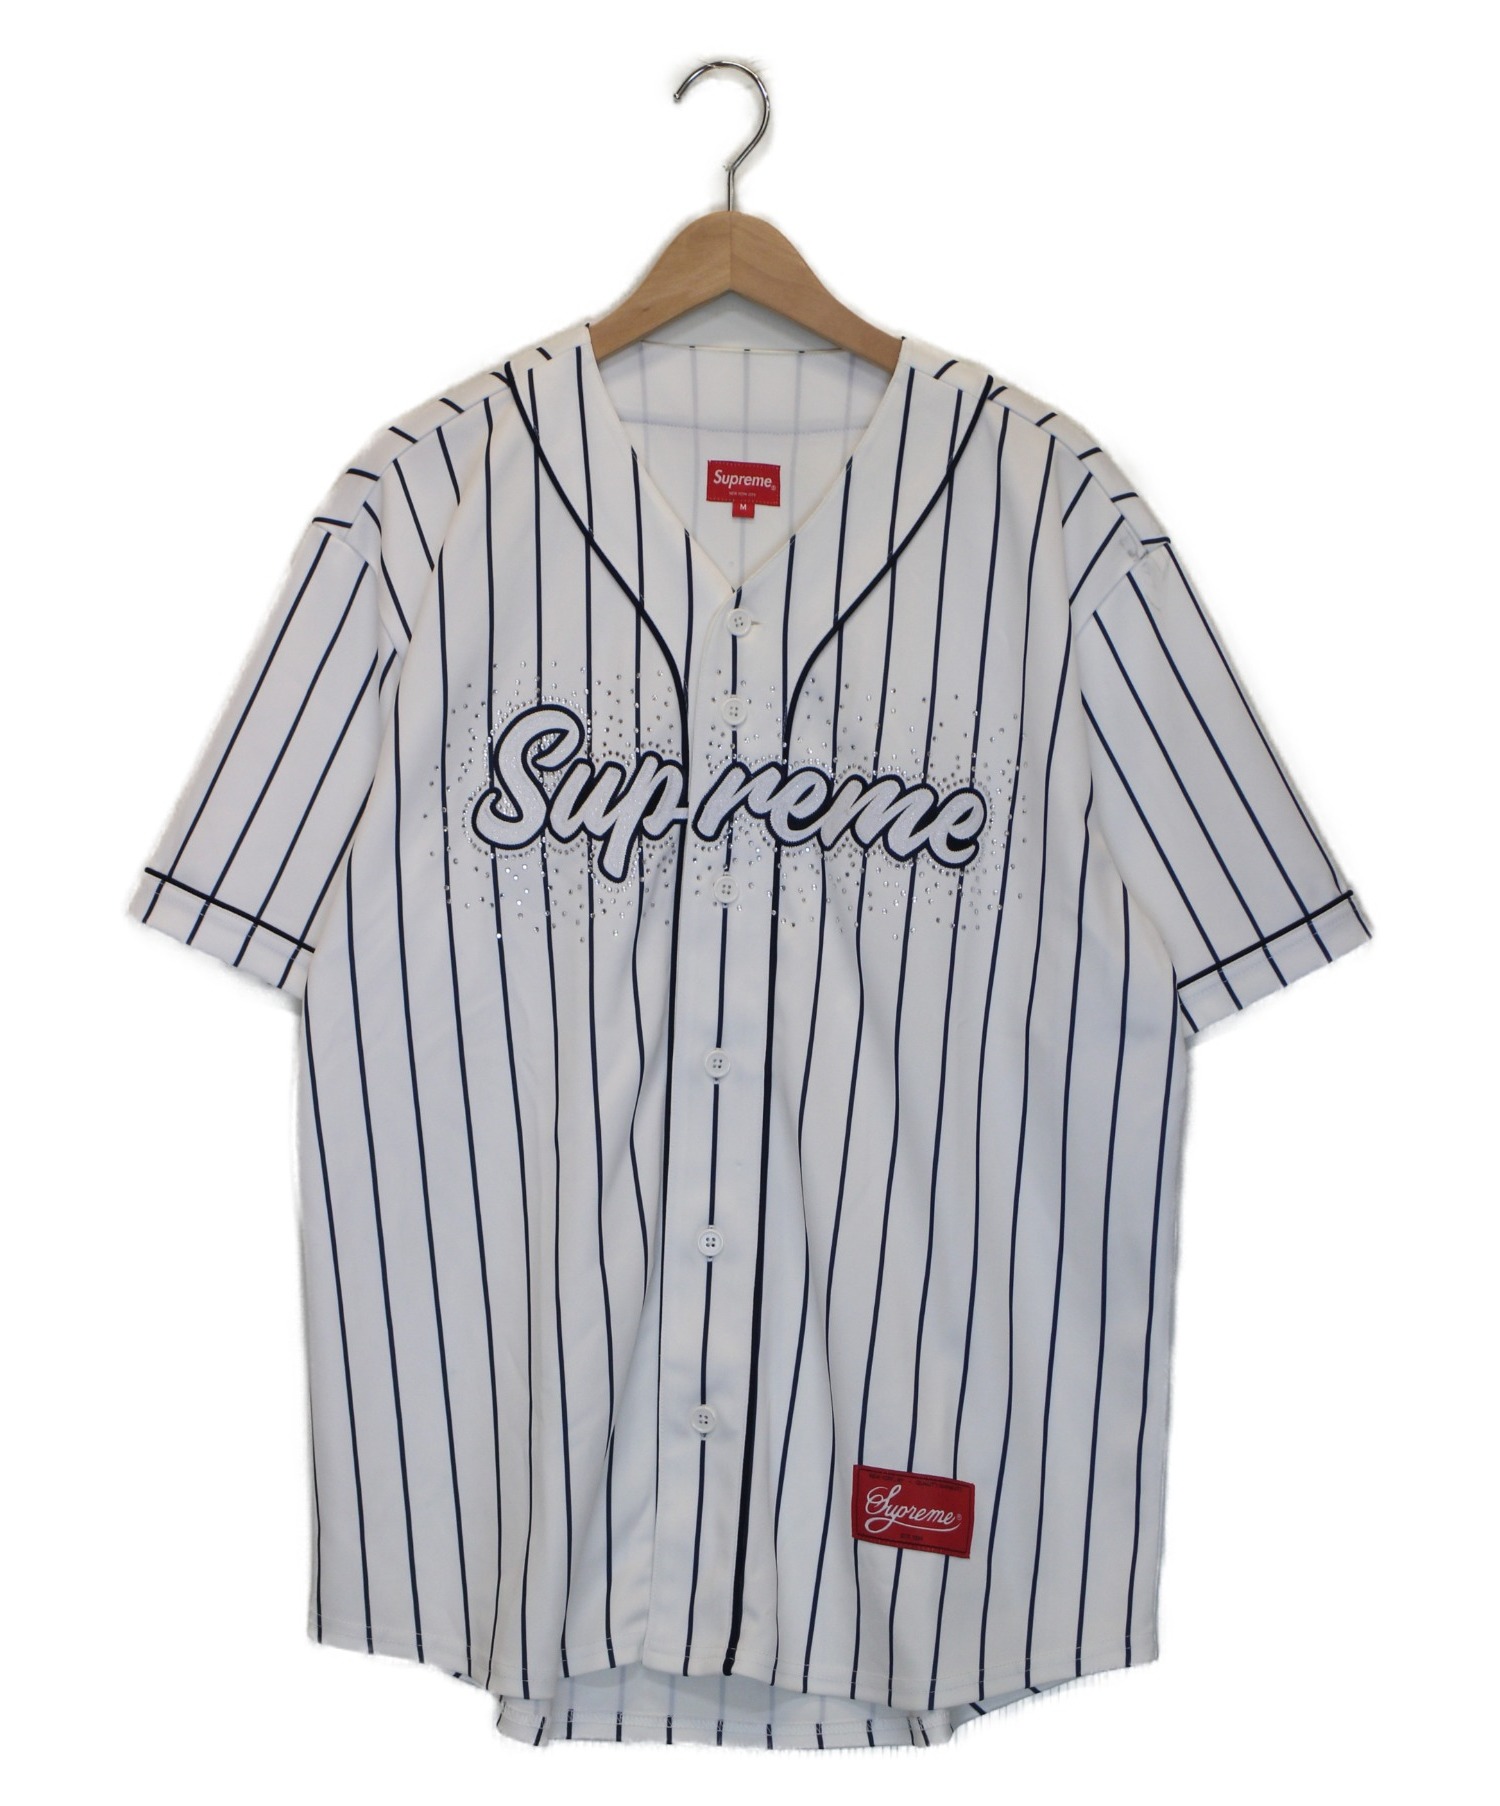 中古 古着通販 Supreme シュプリーム ベースボールシャツ ホワイト サイズ M Rhinestone Baseball Jersey ss ブランド 古着通販 トレファク公式 Trefac Fashion